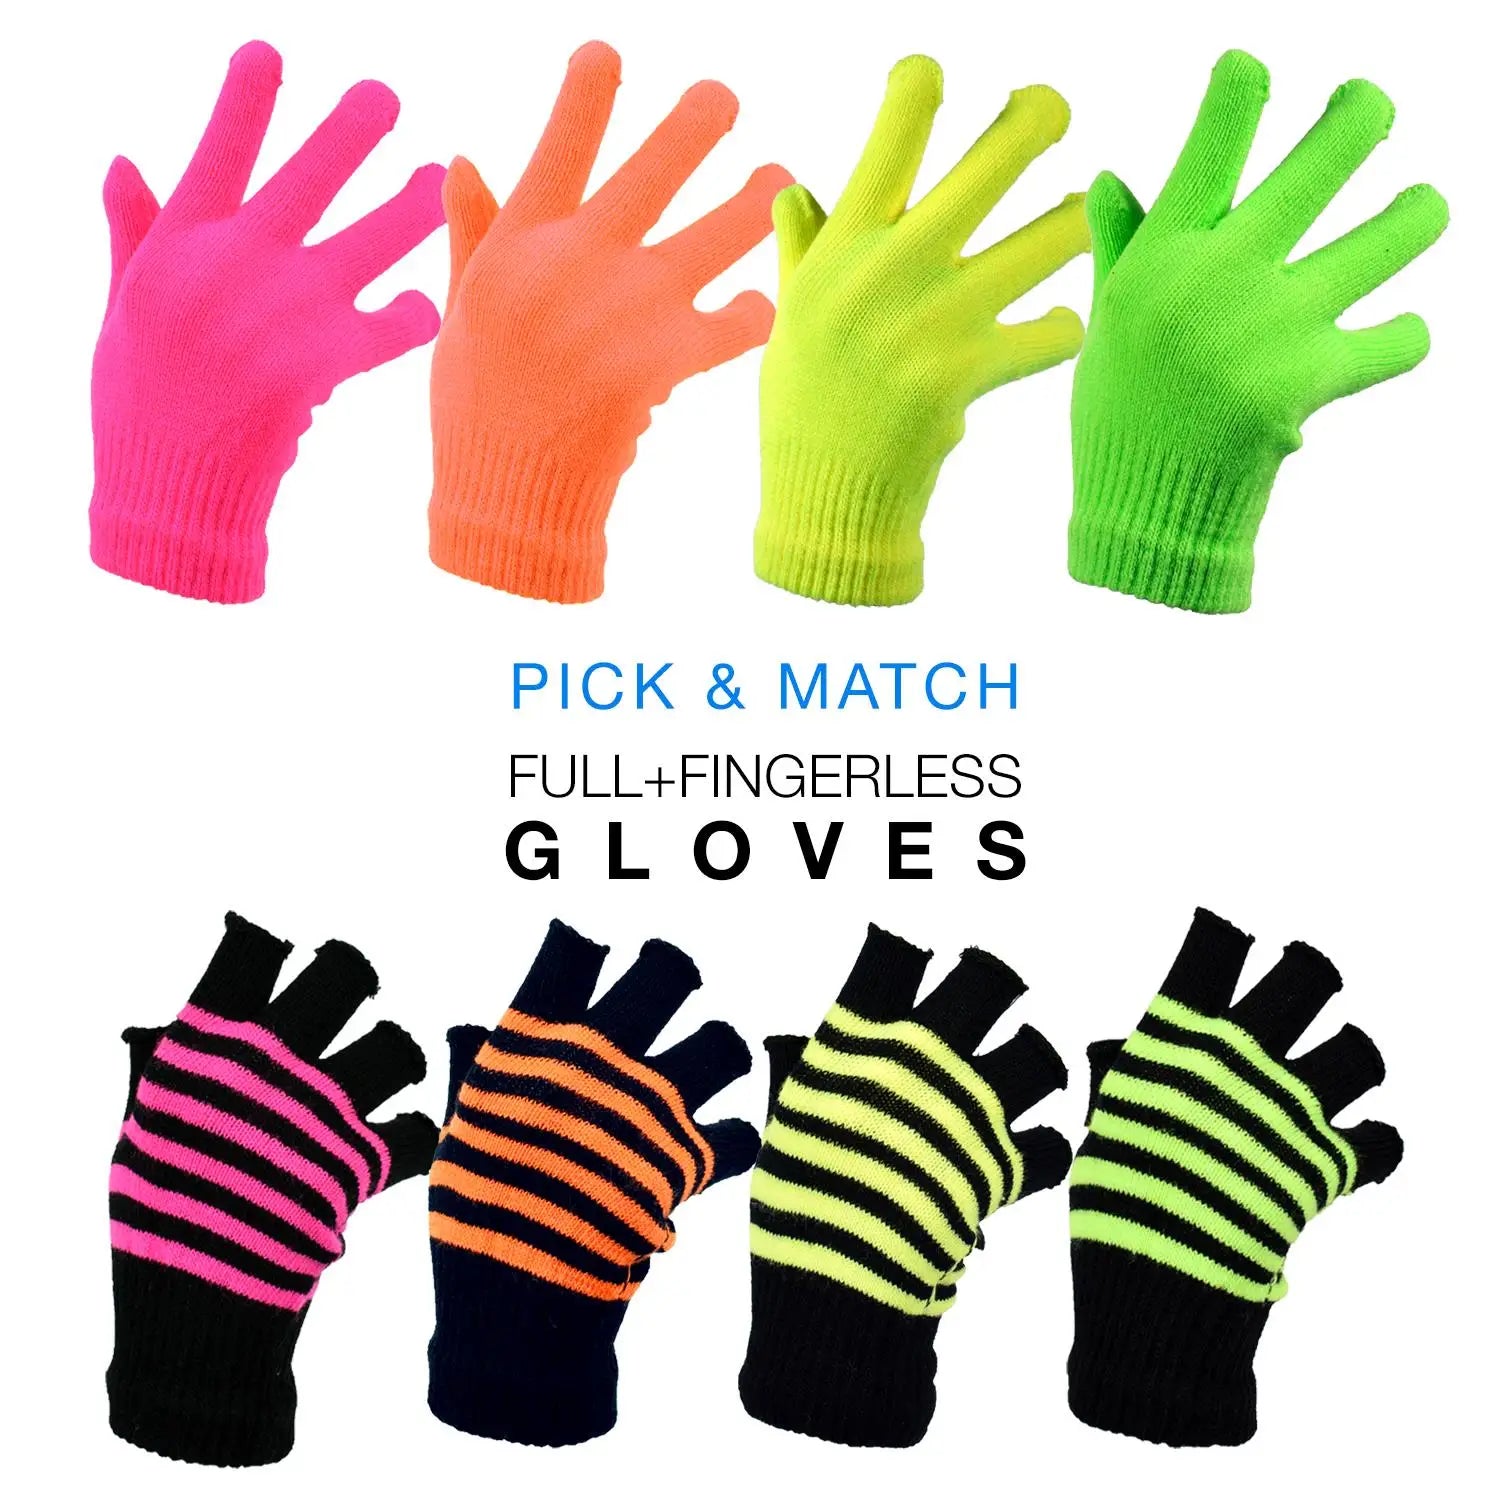 Neon 2-in-1 Full & Fingerless Magic Glove Pack - 8 Pairs, neon colored fingerless magic gloves pack